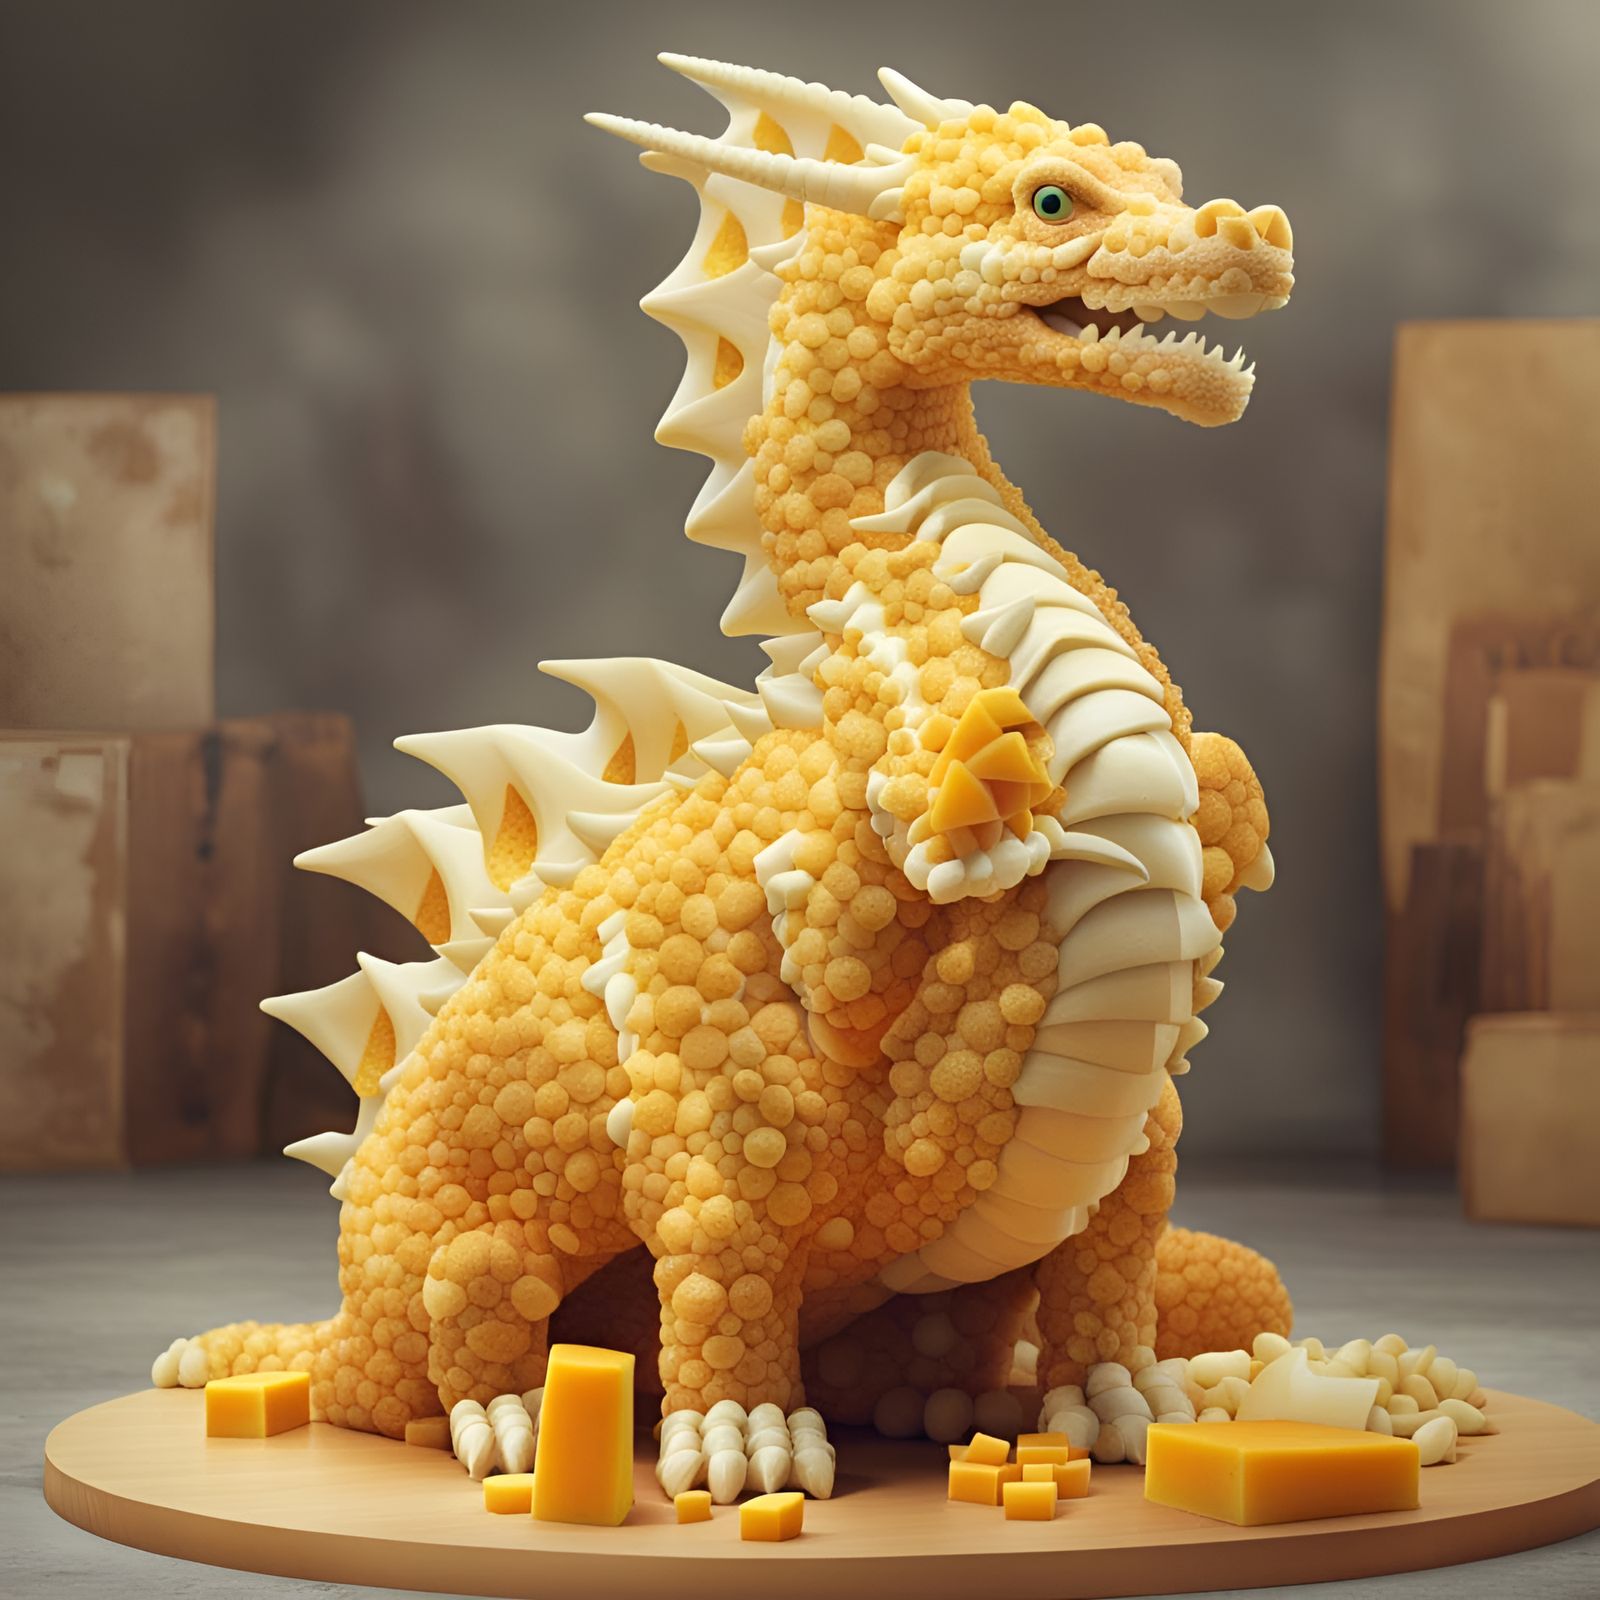 Cheddar Cheese Dragon